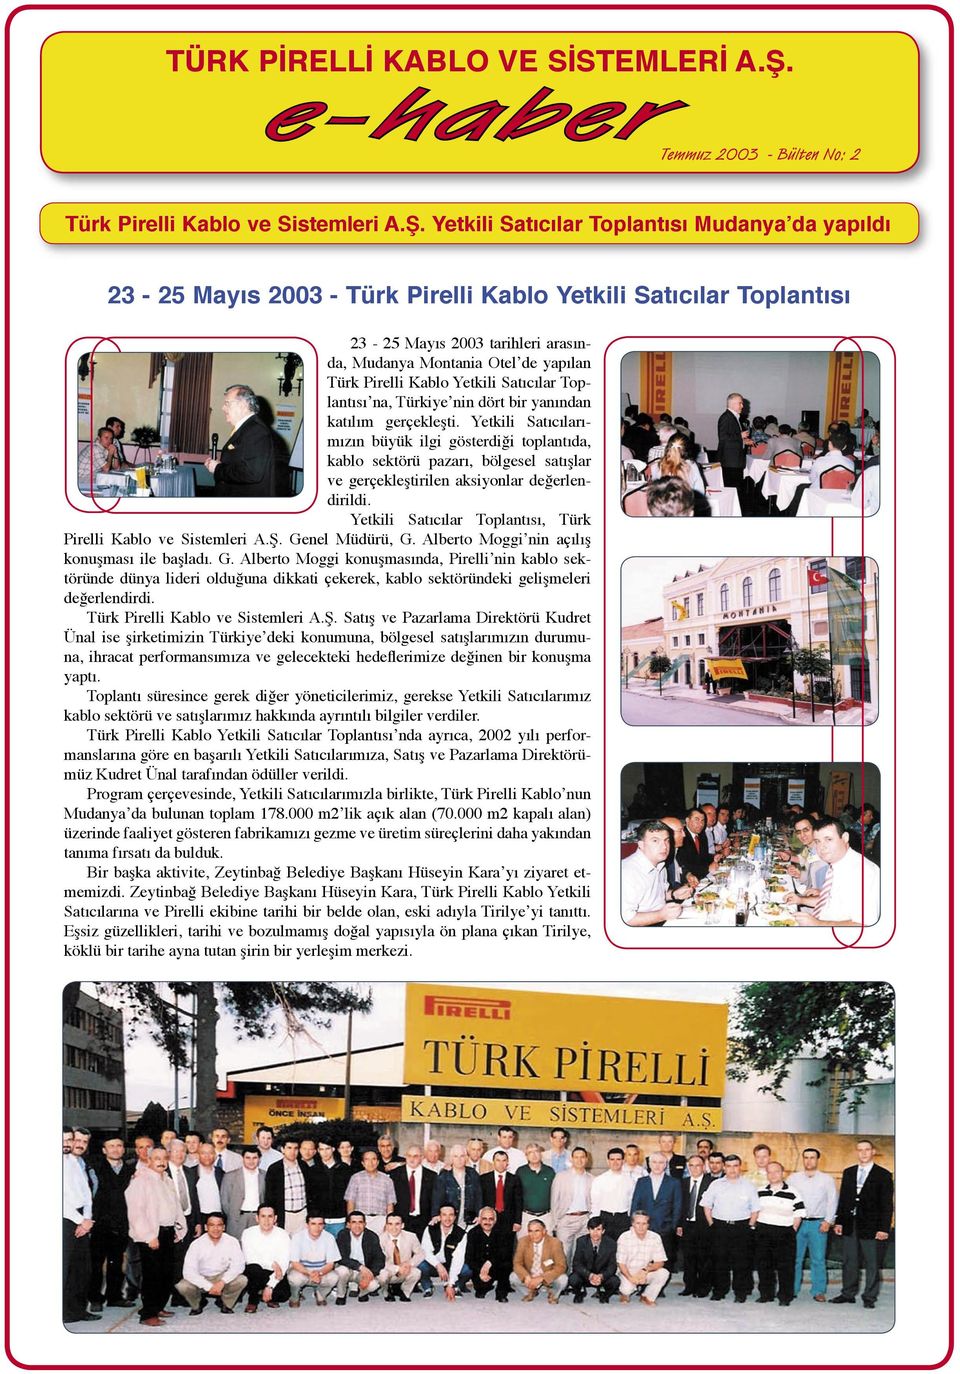 Yetkili Satıcılar Toplantısı Mudanya da yapıldı 23-25 Mayıs 2003 - Türk Pirelli Kablo Yetkili Satıcılar Toplantısı 23-25 Mayıs 2003 tarihleri arasında, Mudanya Montania Otel de yapılan Türk Pirelli